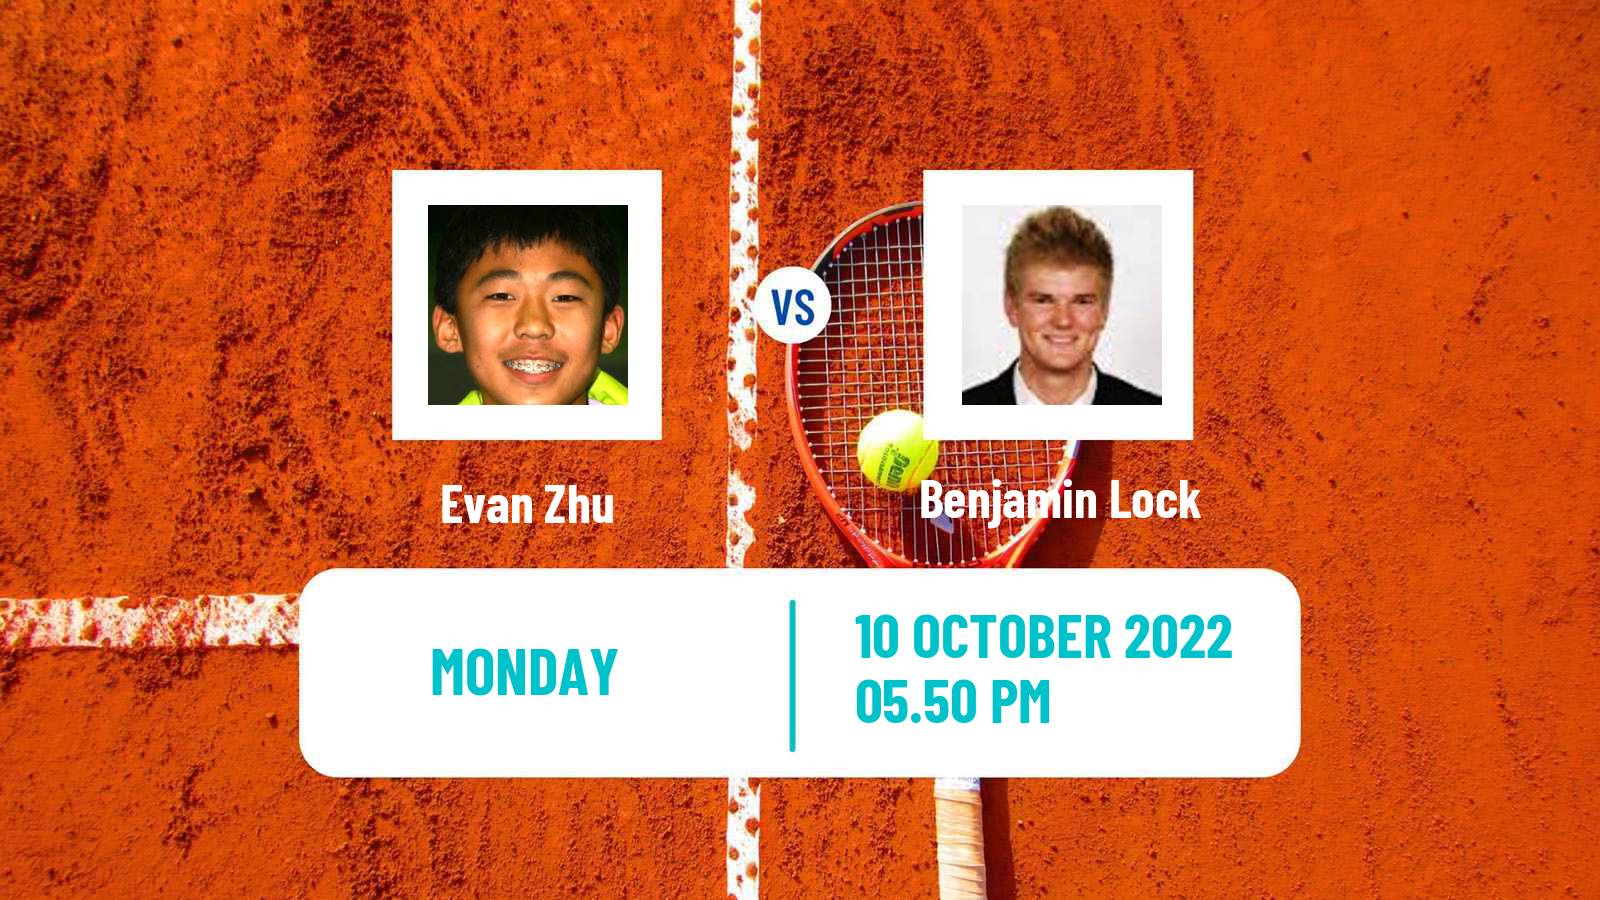 Tennis ATP Challenger Evan Zhu - Benjamin Lock